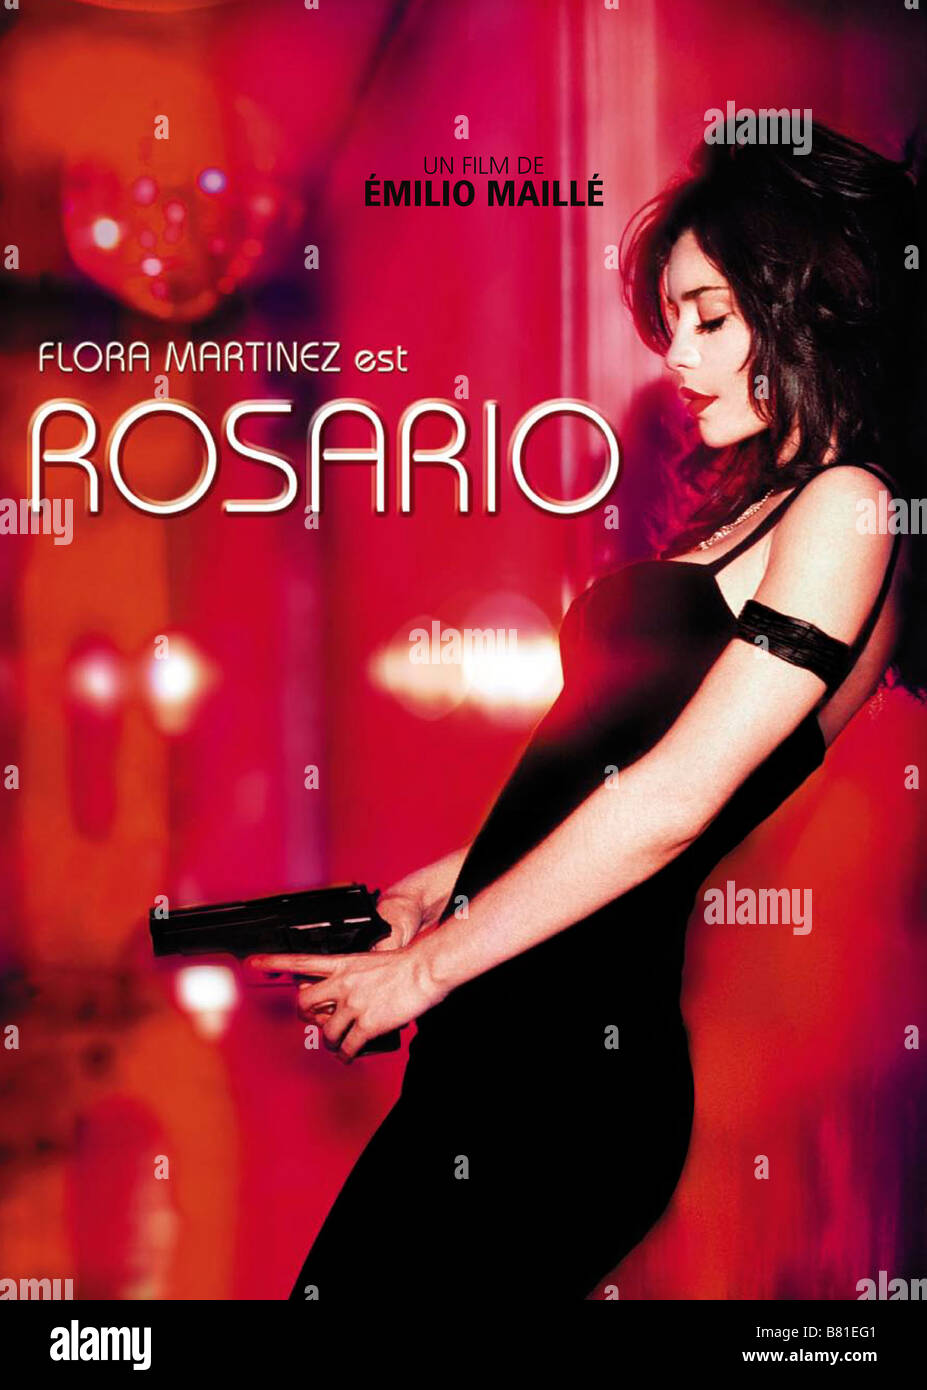 Rosario Rosario Tijeras Año: 2005 - Colombia / México / España / Brasil  affiche / poster Flora Martínez director: Emilio Maillé Fotografía de stock  - Alamy